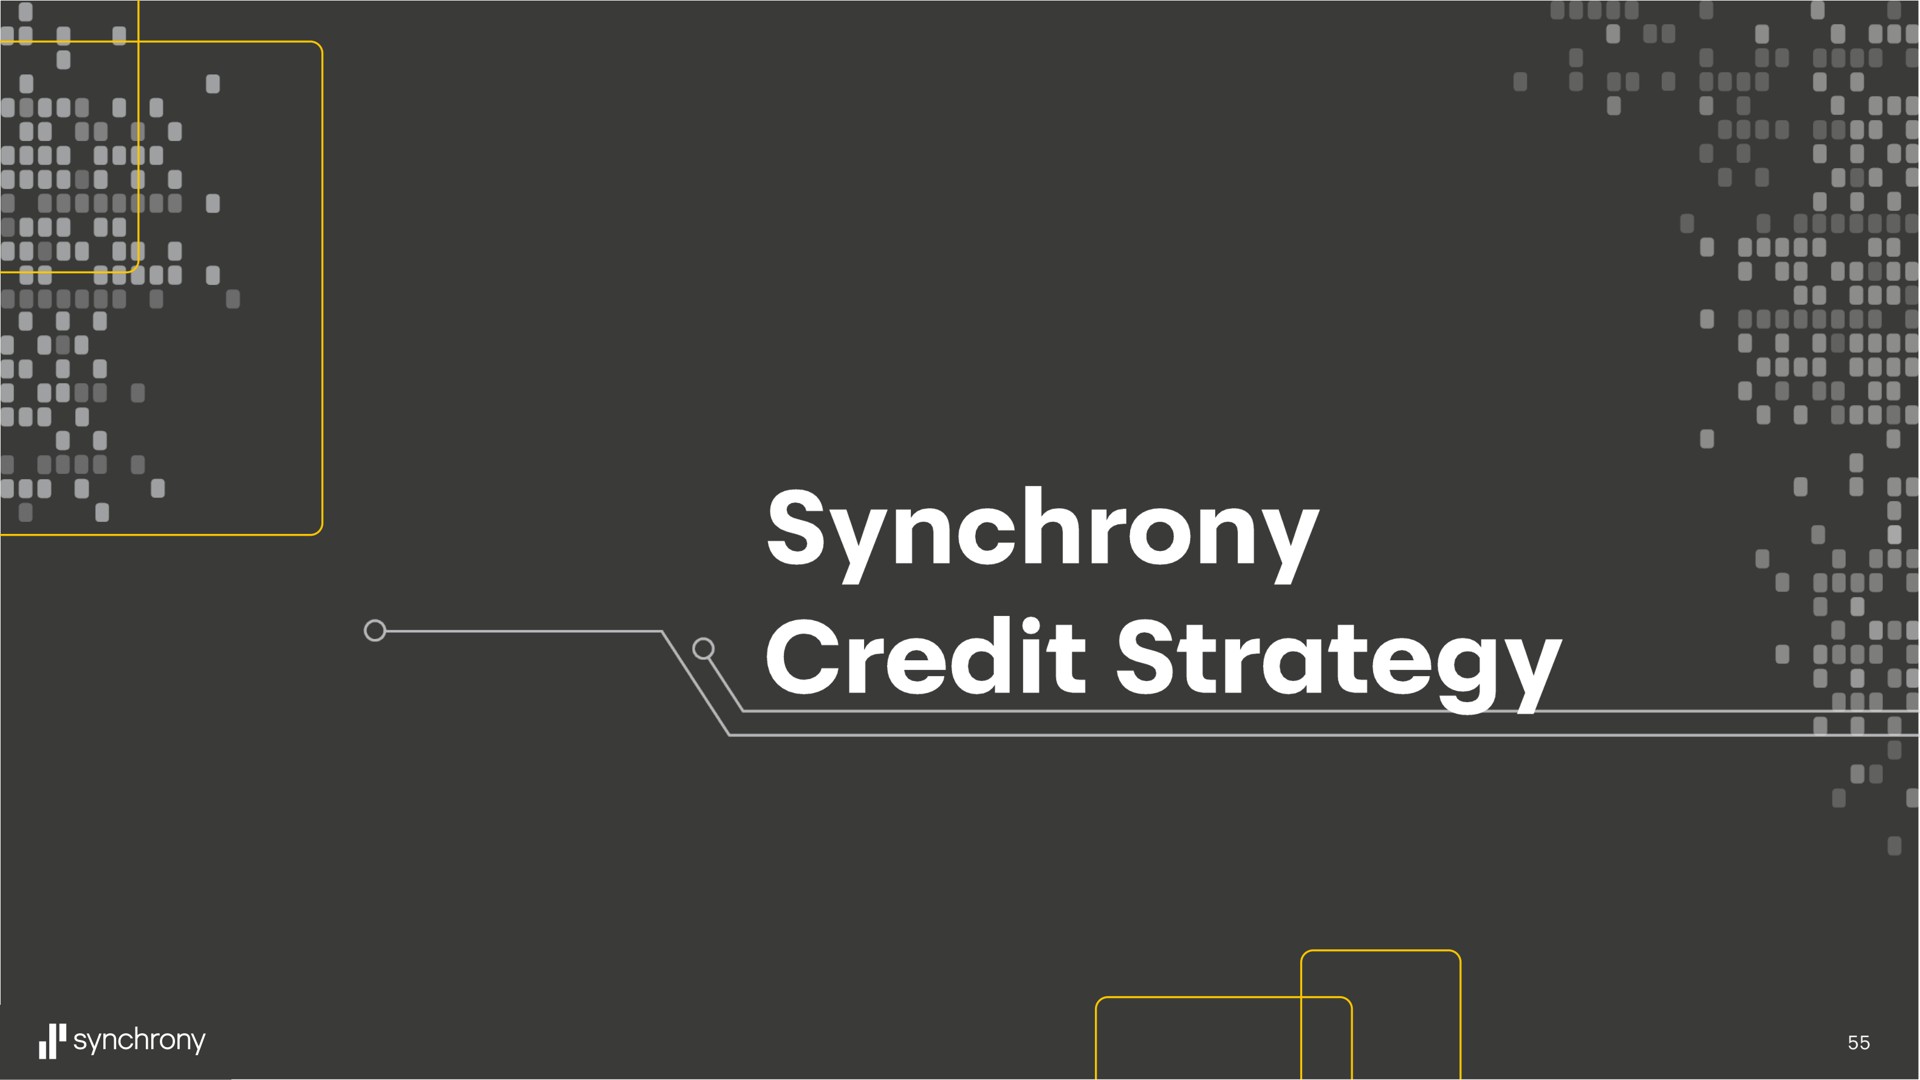 synchrony credit | Synchrony Financial